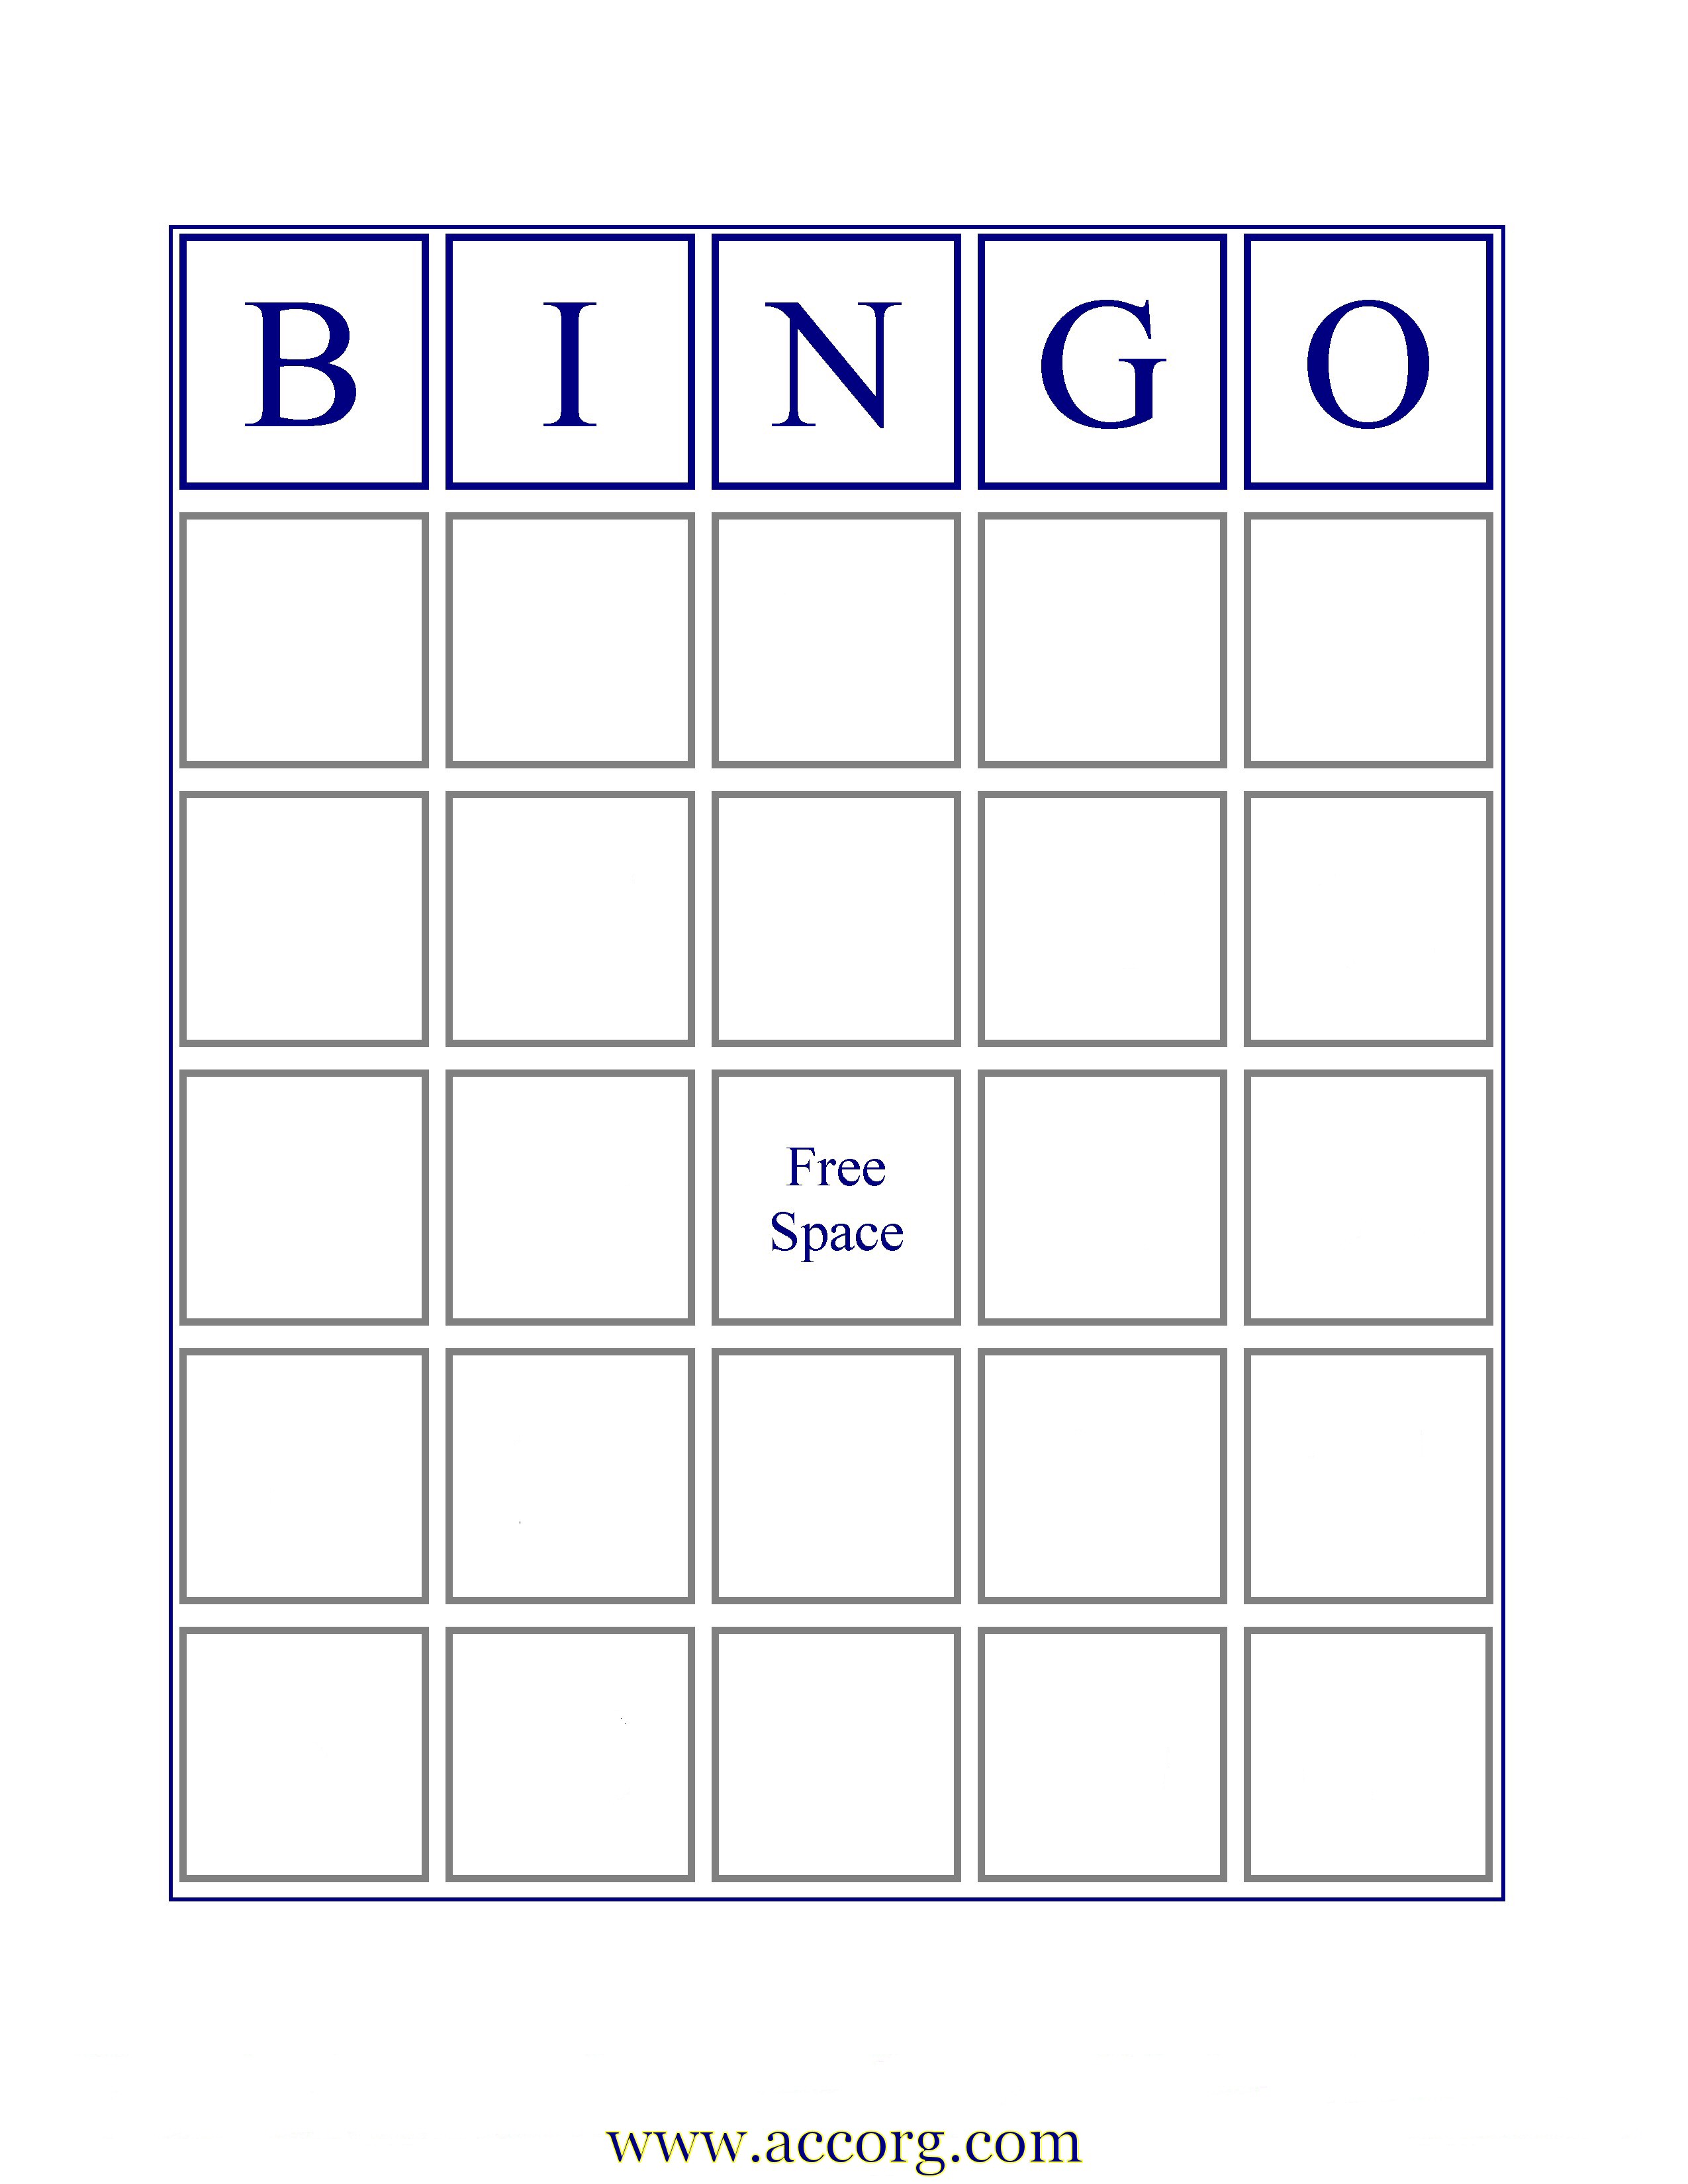 printable-bingo-boards-blank-printable-world-holiday